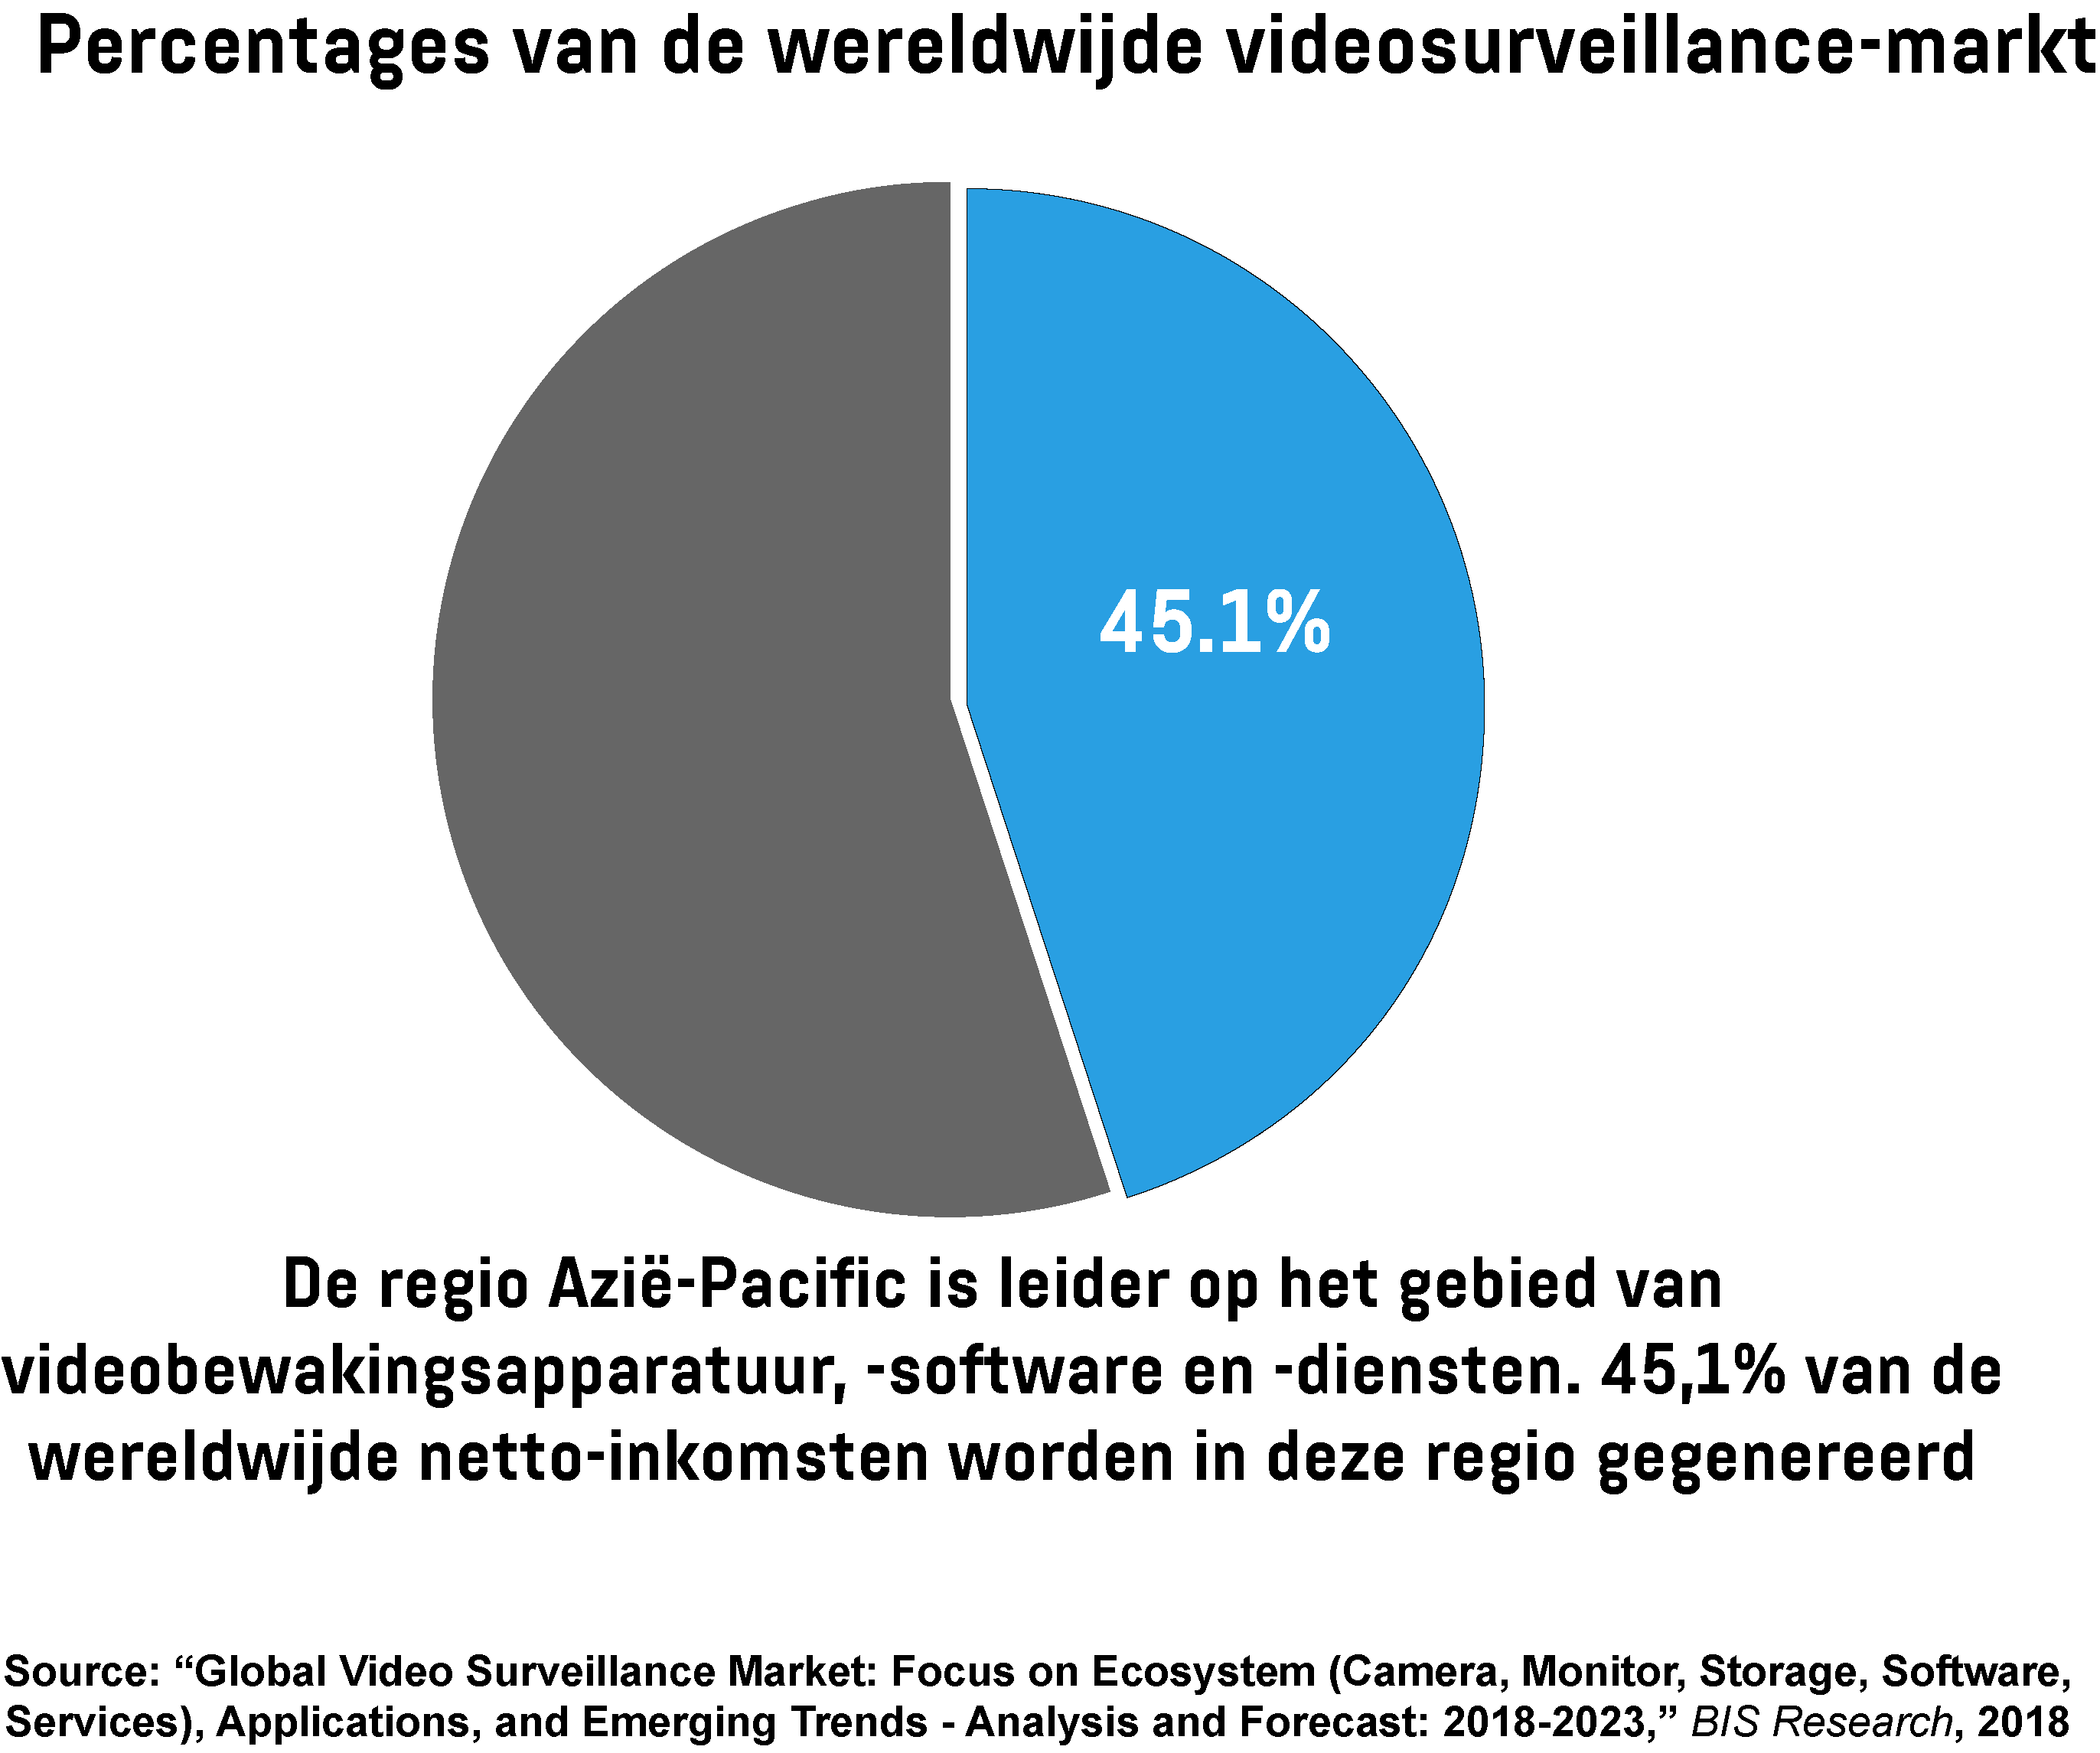  Cirkeldiagram toont het aandeel van de regio Azië-Pacific in de wereldwijde videosurveillance-markt